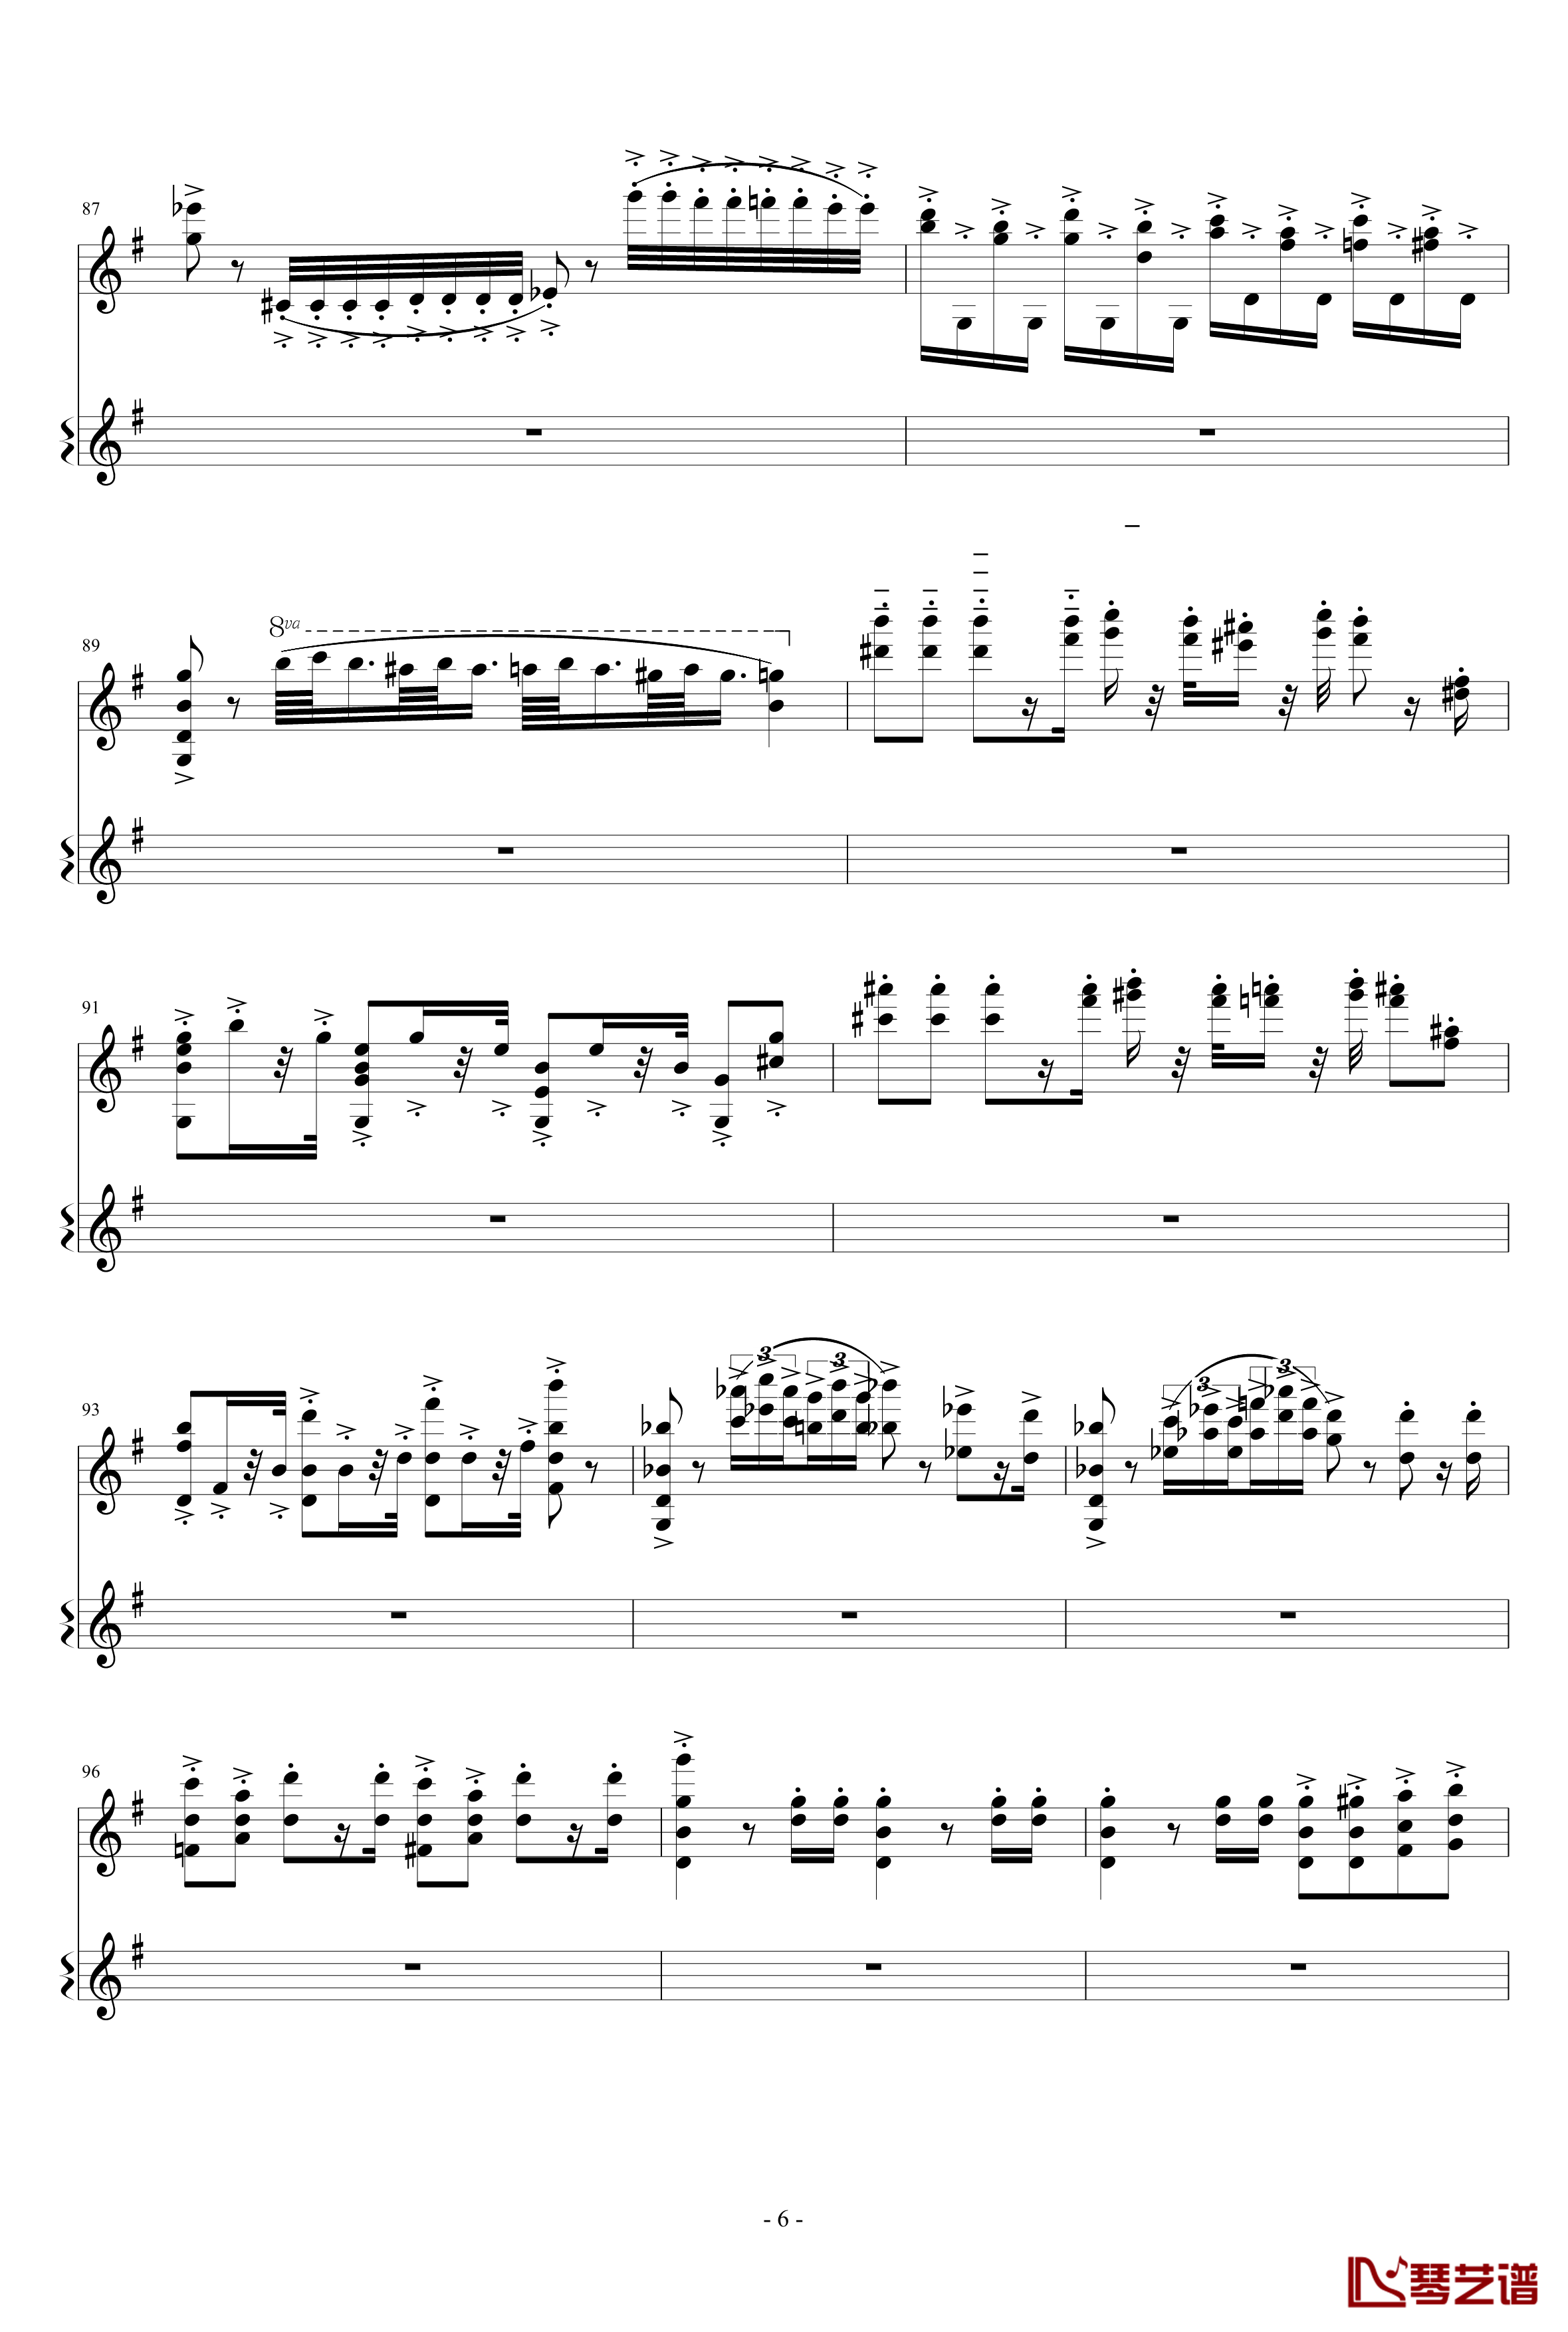 意大利国歌变奏曲钢琴谱-只修改了一个音-DXF6